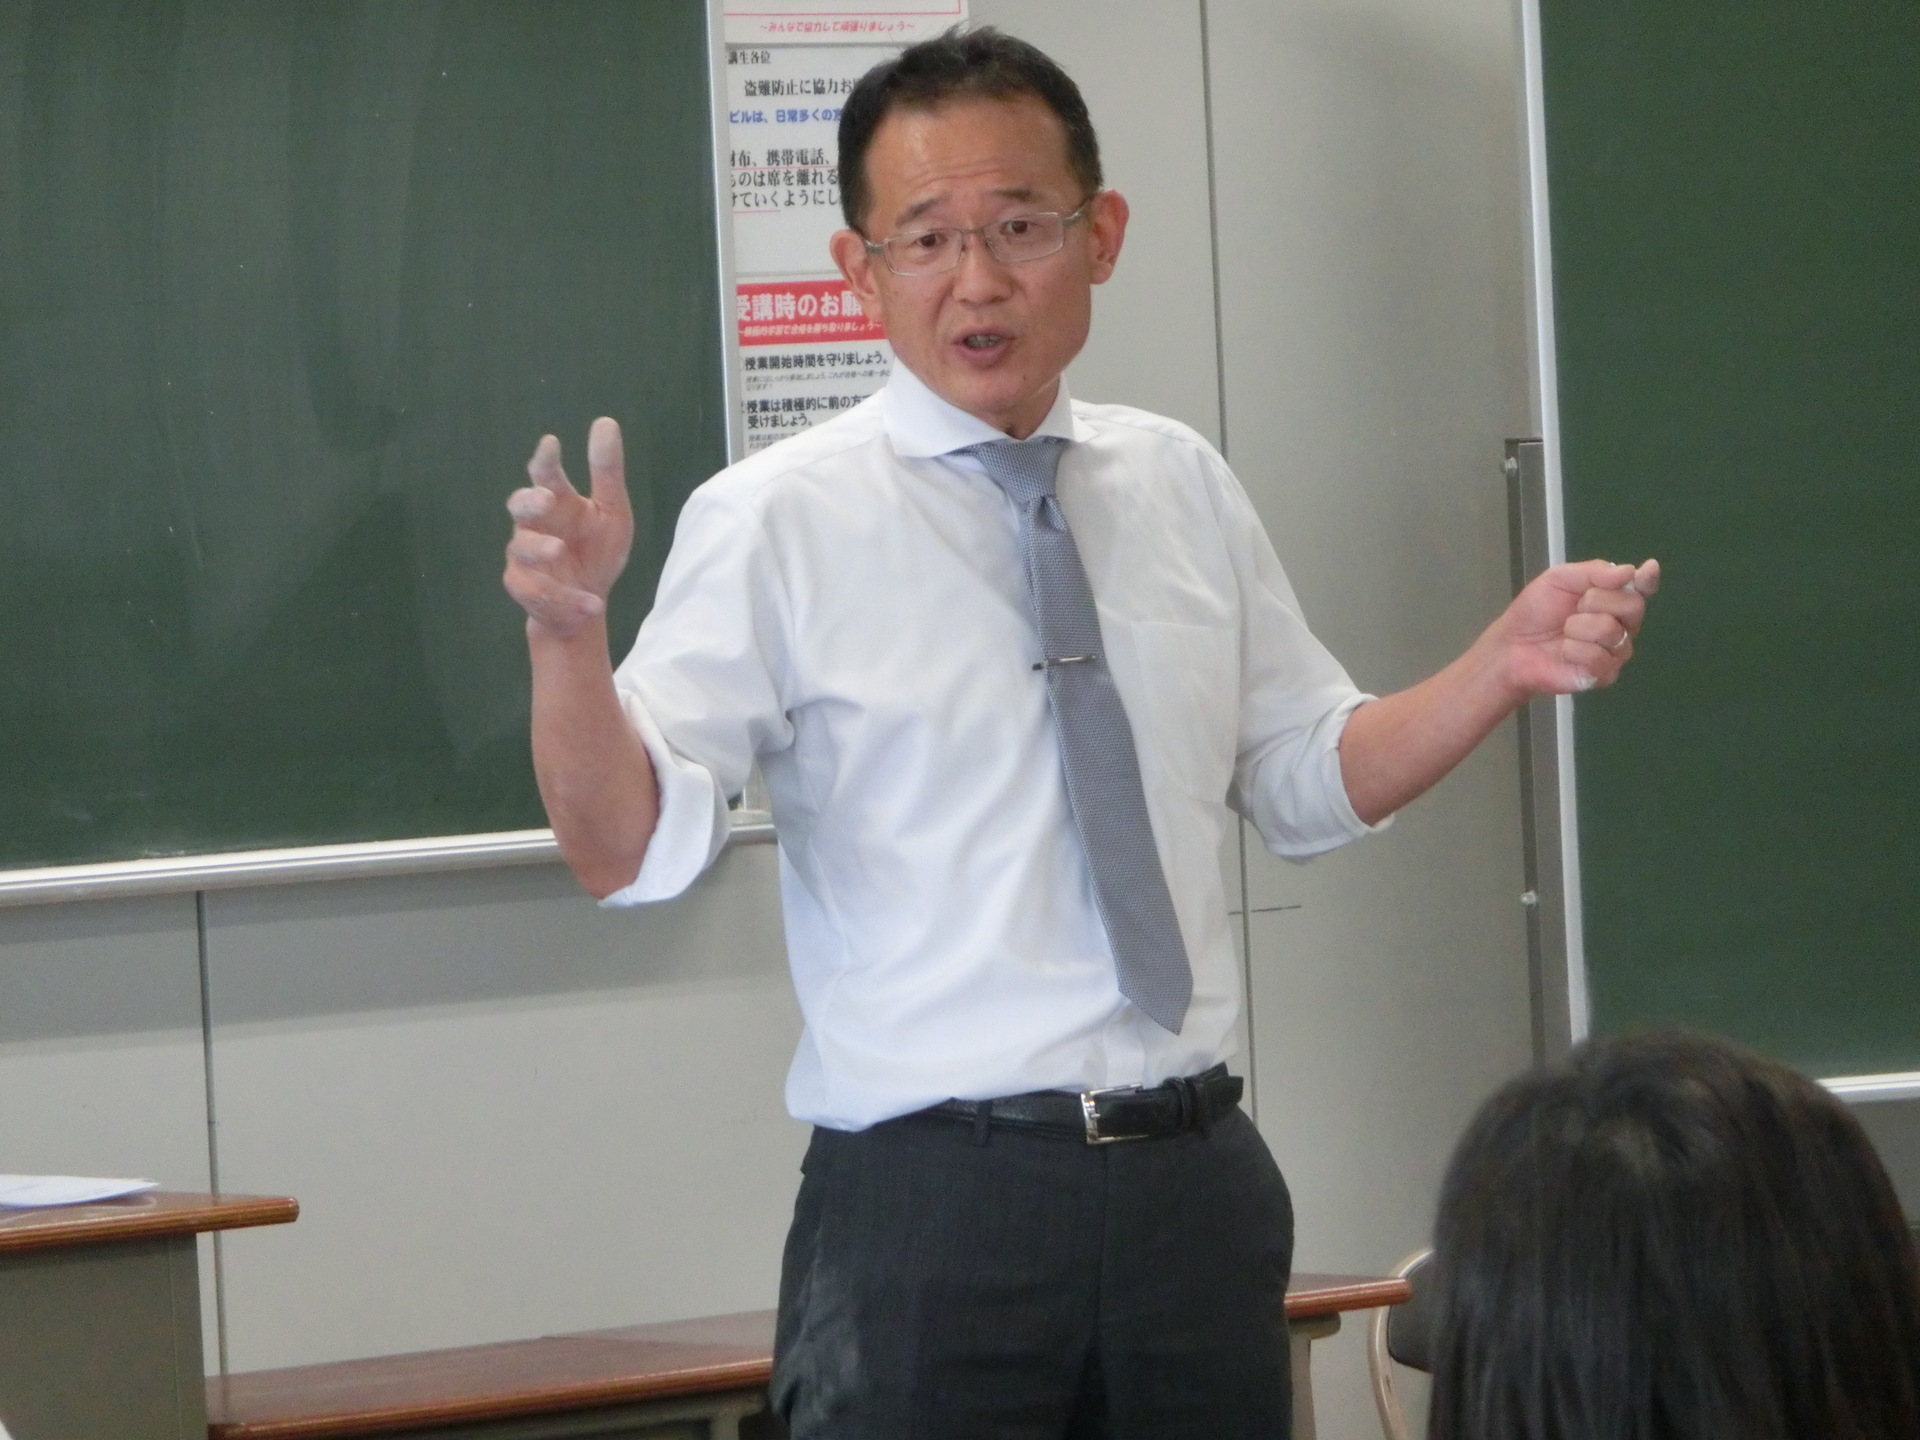 カリスマガイダンス 第一弾 教員採用 実施しました 東京アカデミー熊本校 教員採用試験 看護師国家試験 公務員試験 のブログ